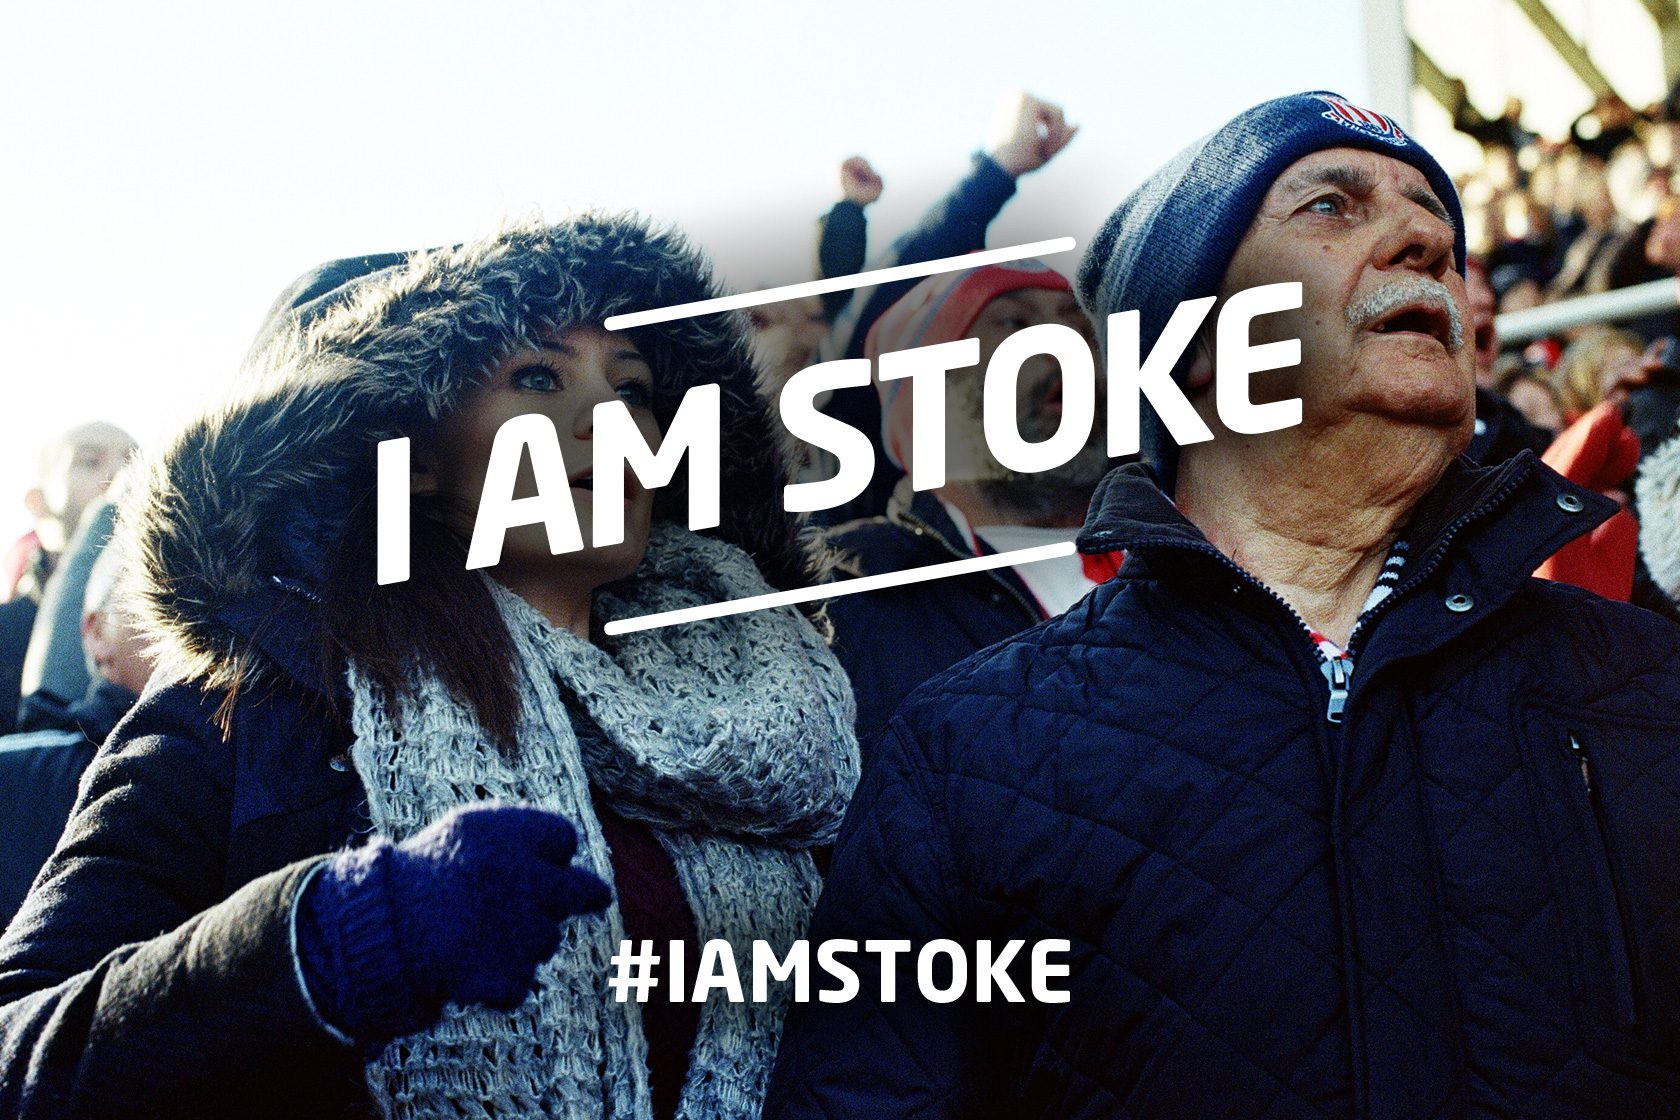 Iam Stoke fans